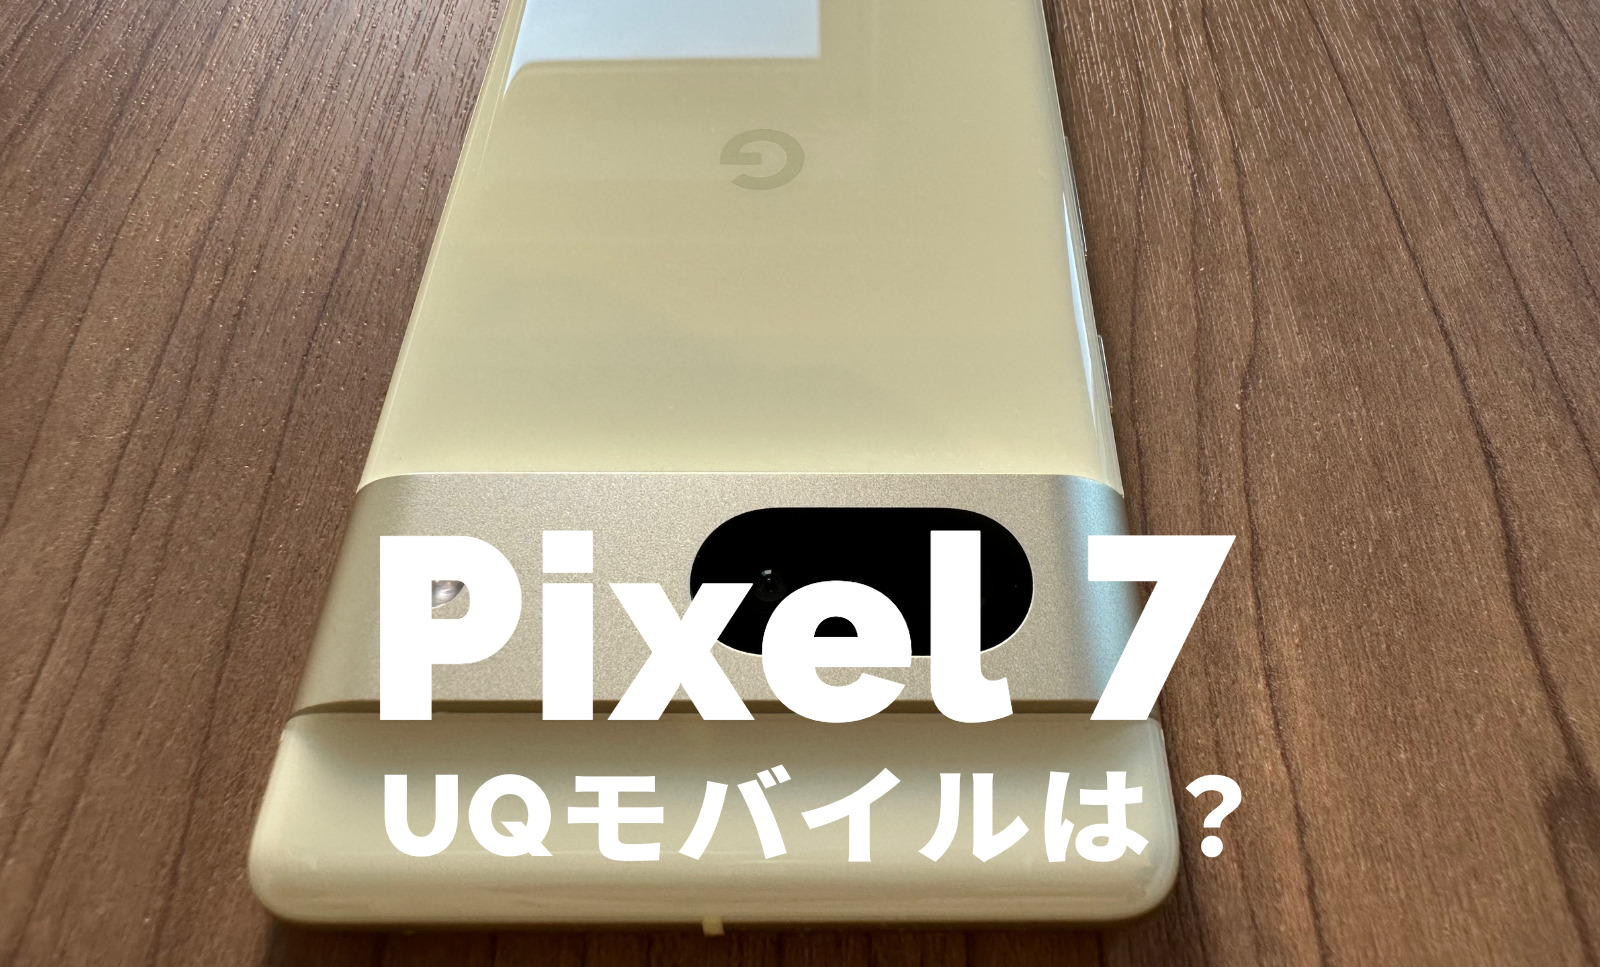 UQモバイルでGoogle Pixel 7やPixel 7 Proは使える？対応？【ピクセル7】のサムネイル画像